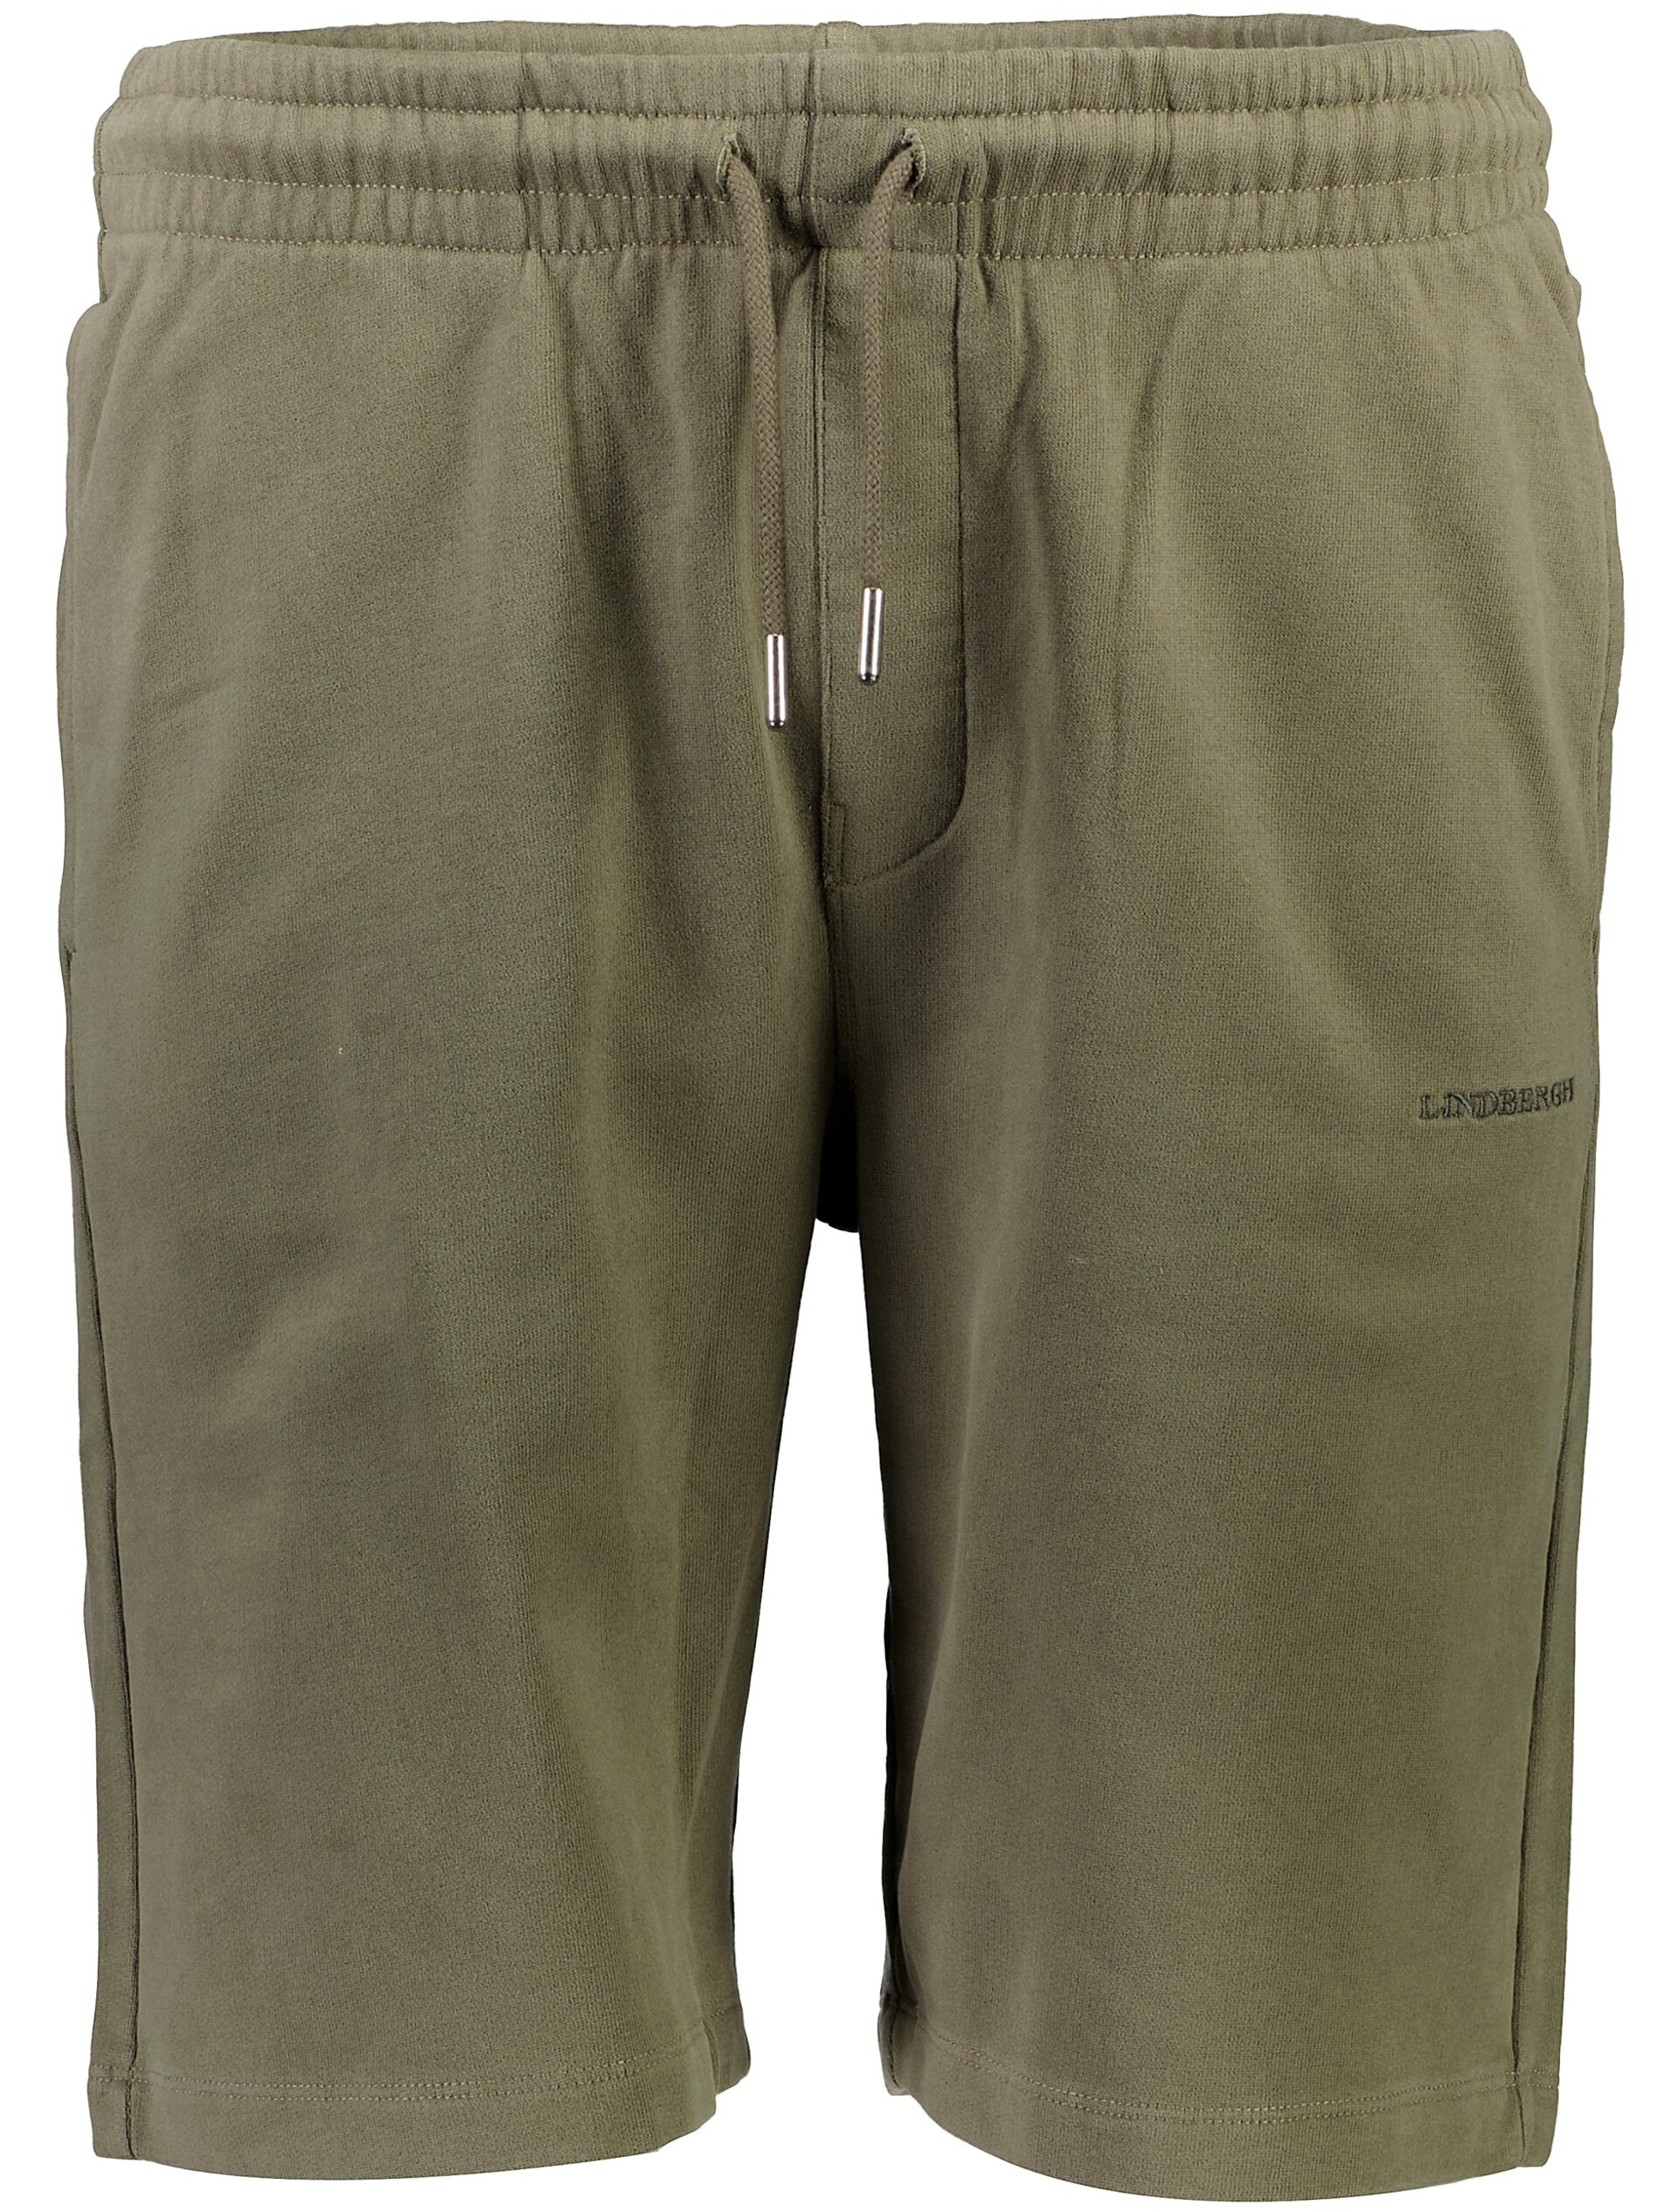 Lindbergh Casual korte broek groen / lt dusty army